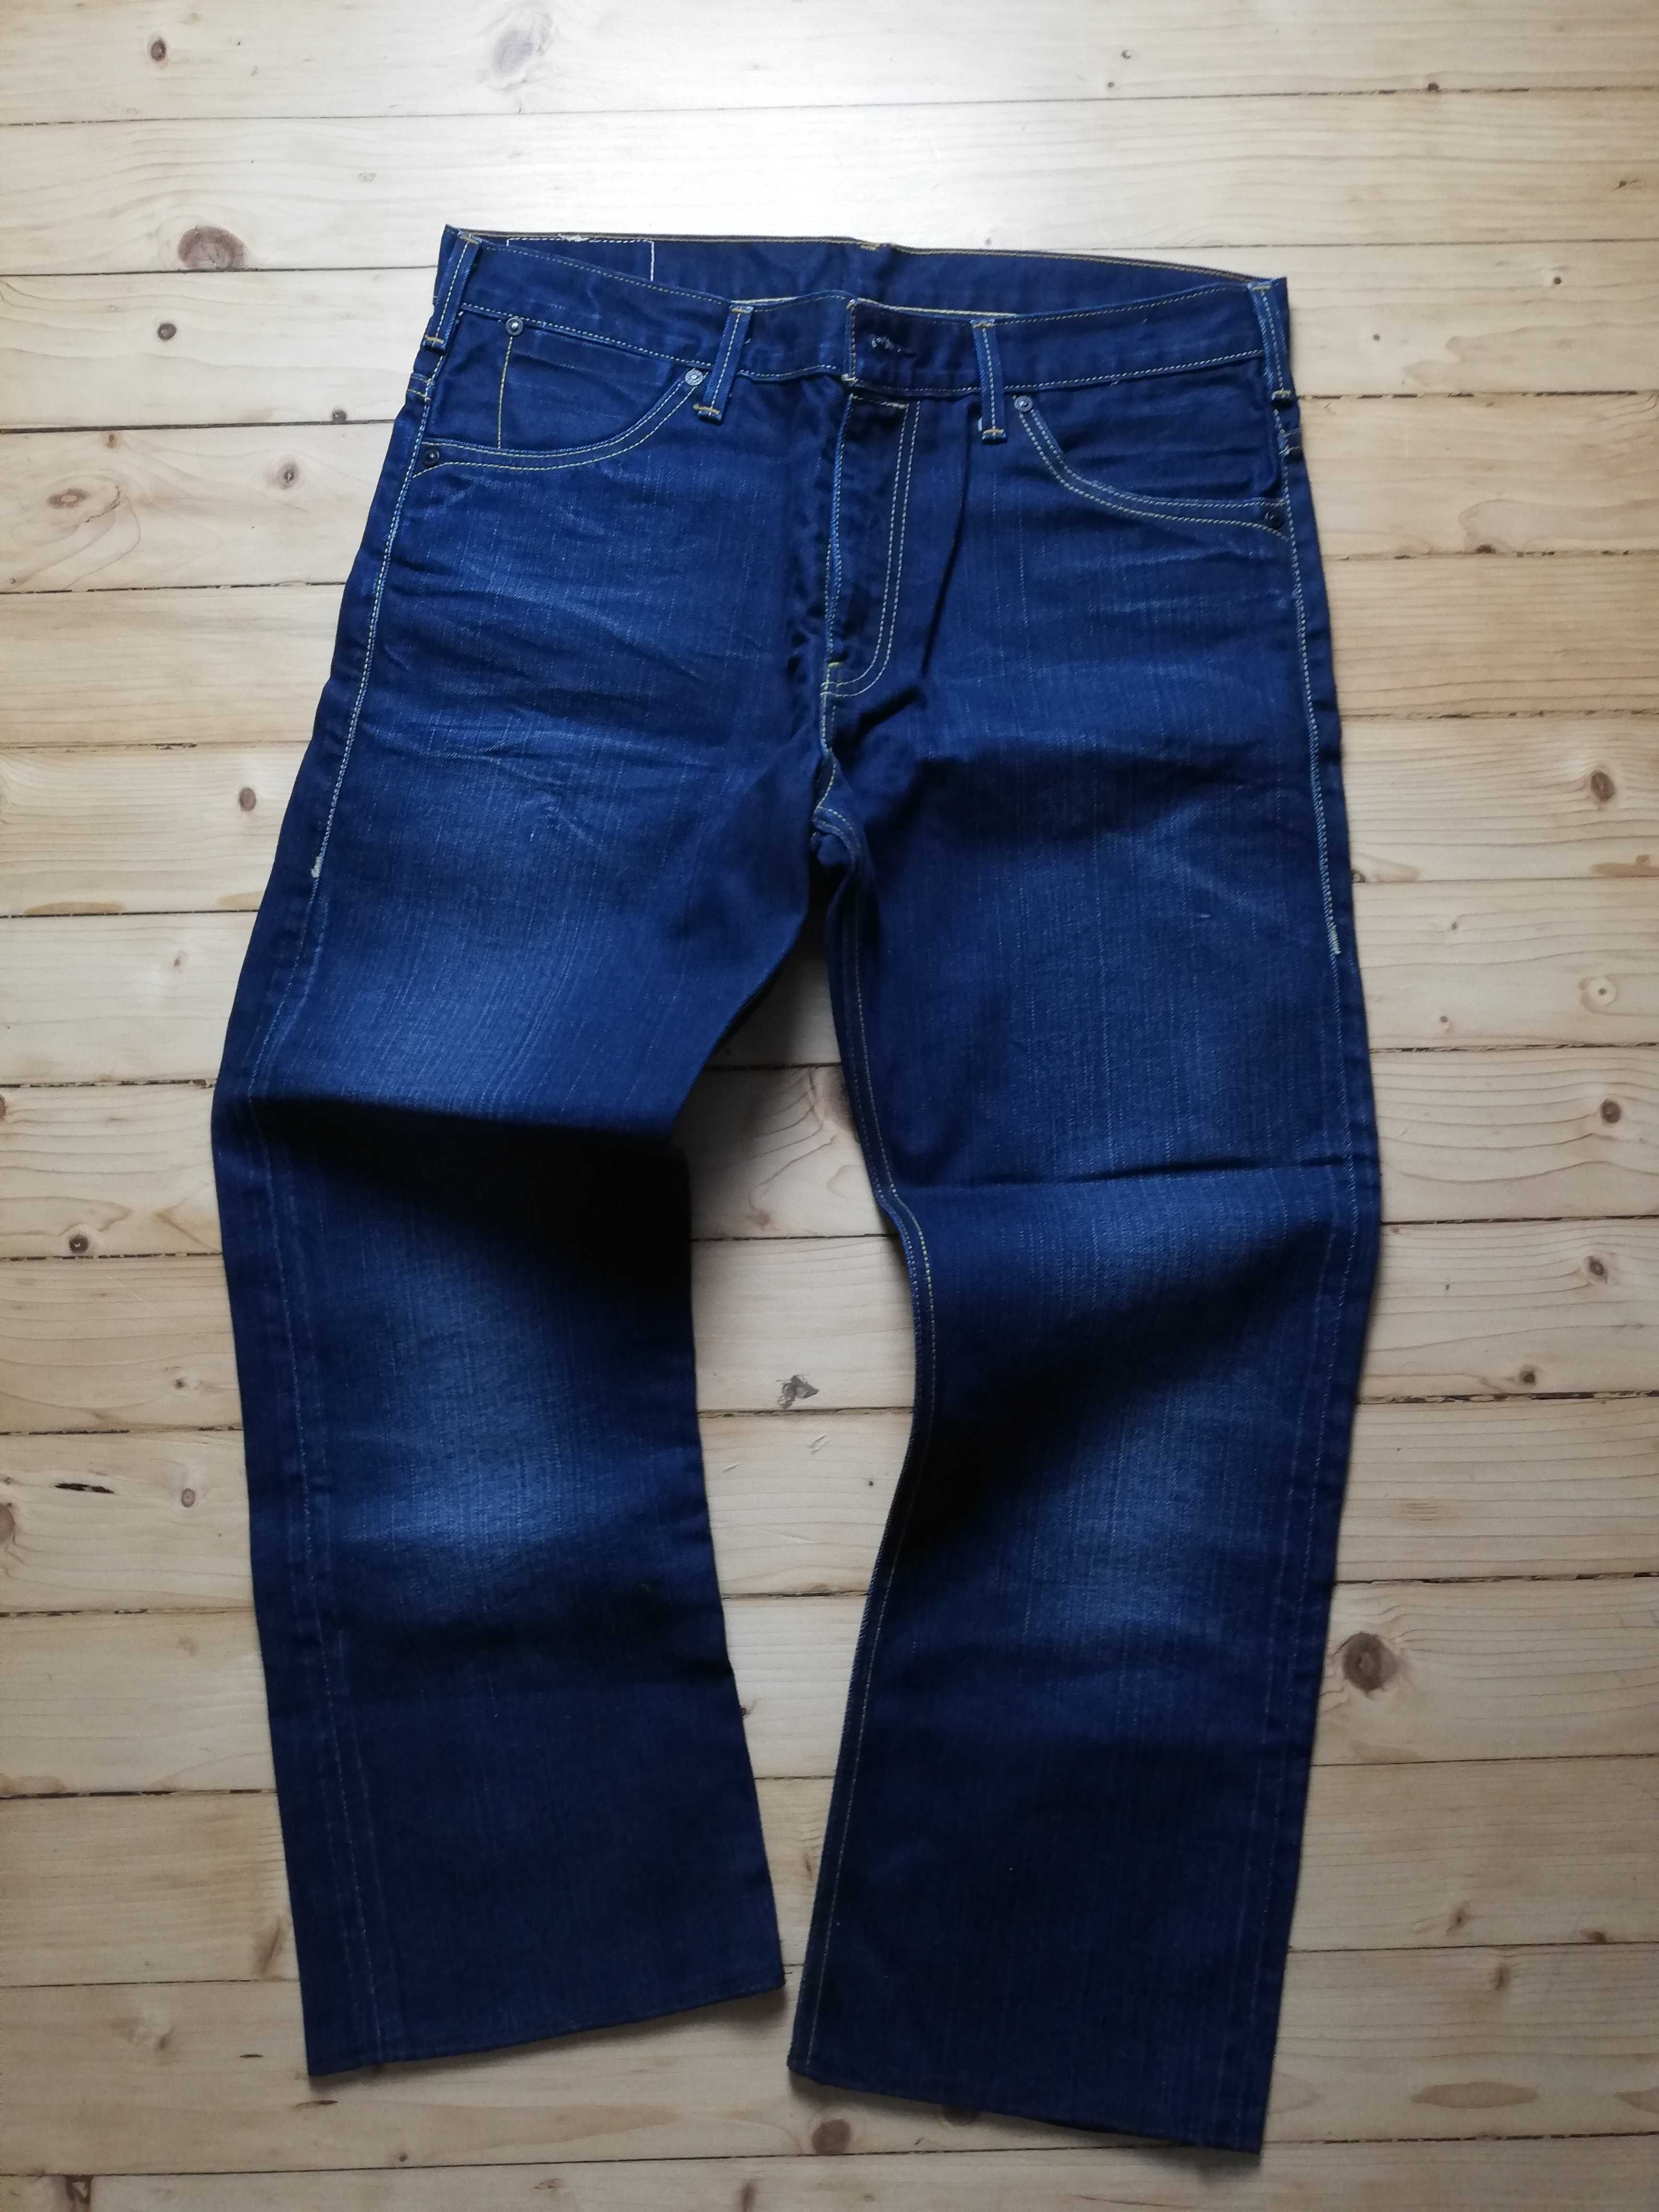 LEVIS - Denim Jeans - Vintage - Rare - New